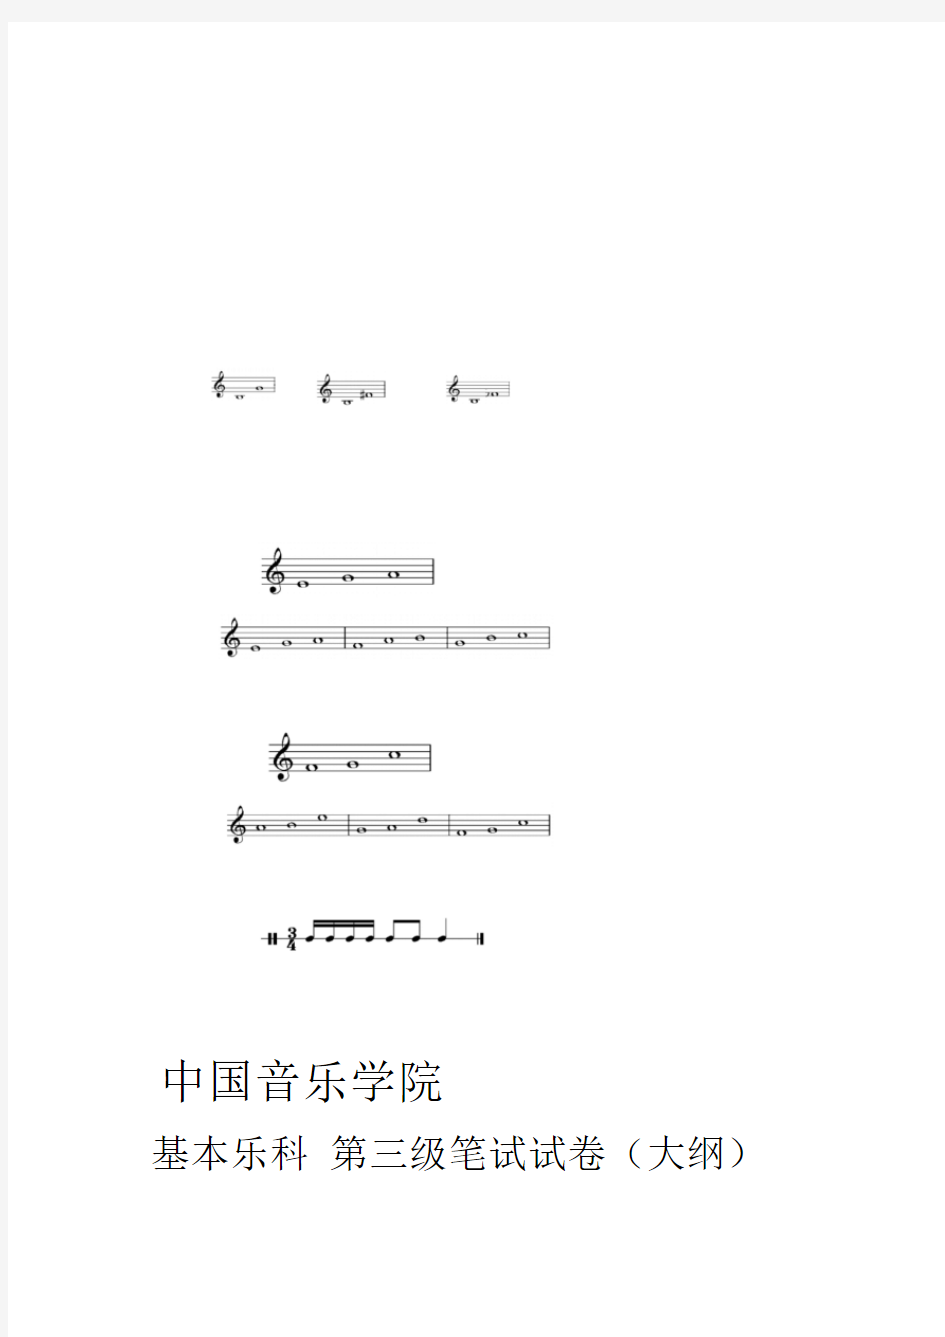 完整版中国音乐学院乐理考级大纲三级